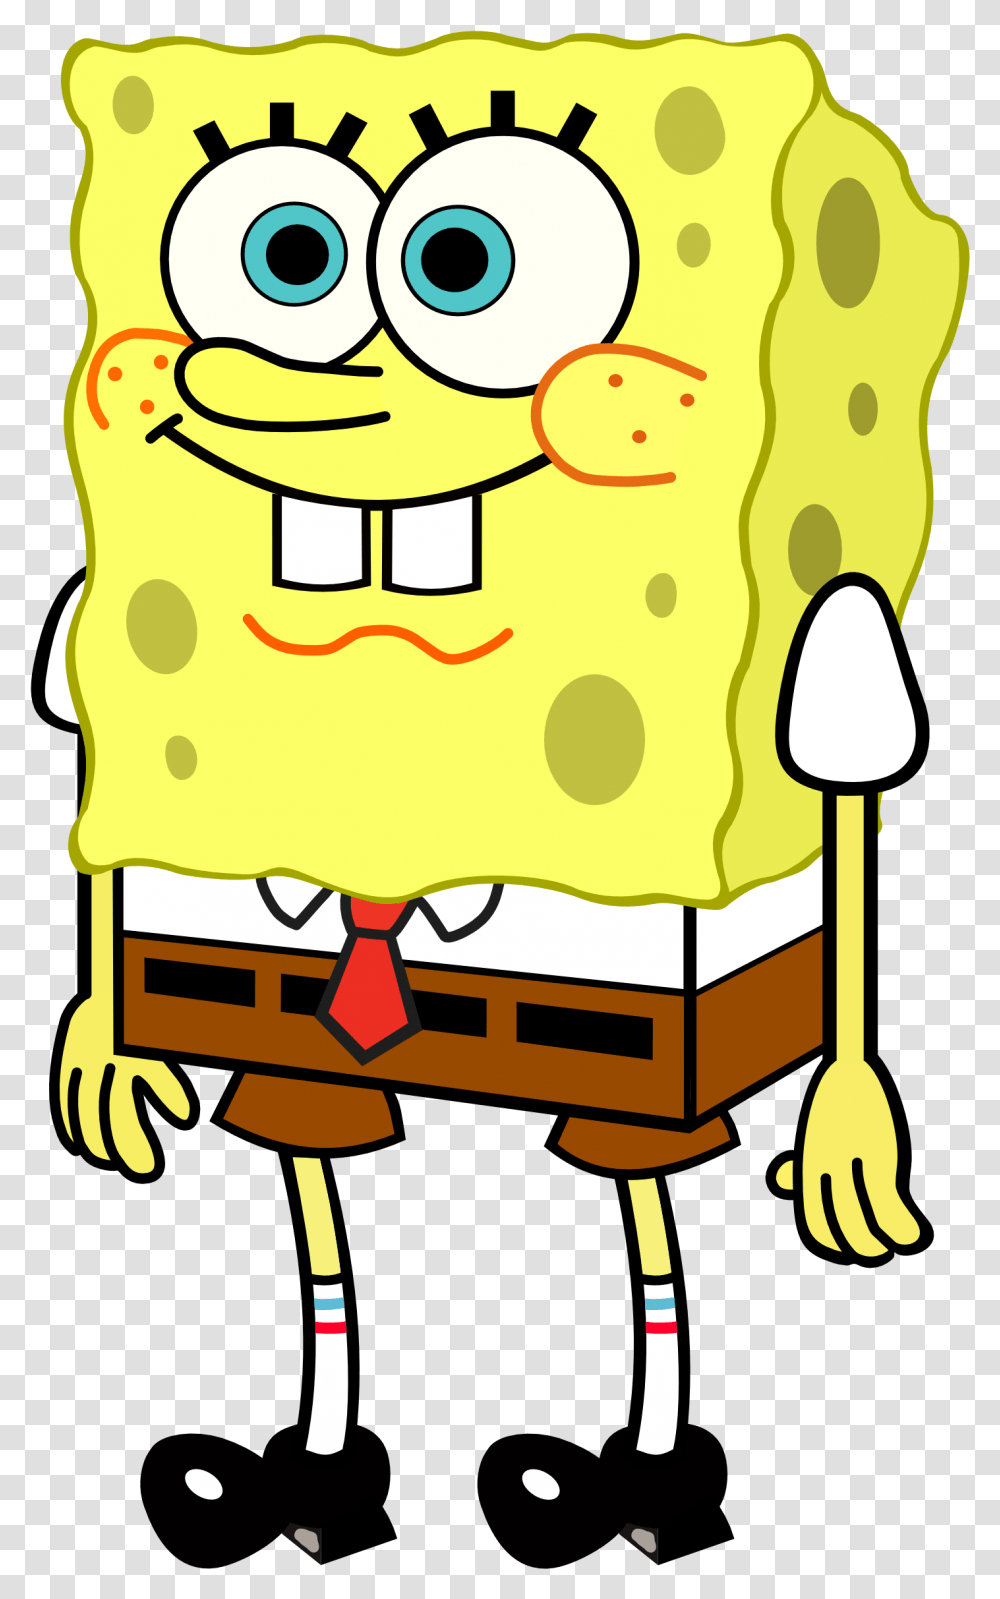 Sponge Bob Square Pants, Apparel, Food, Lifejacket Transparent Png